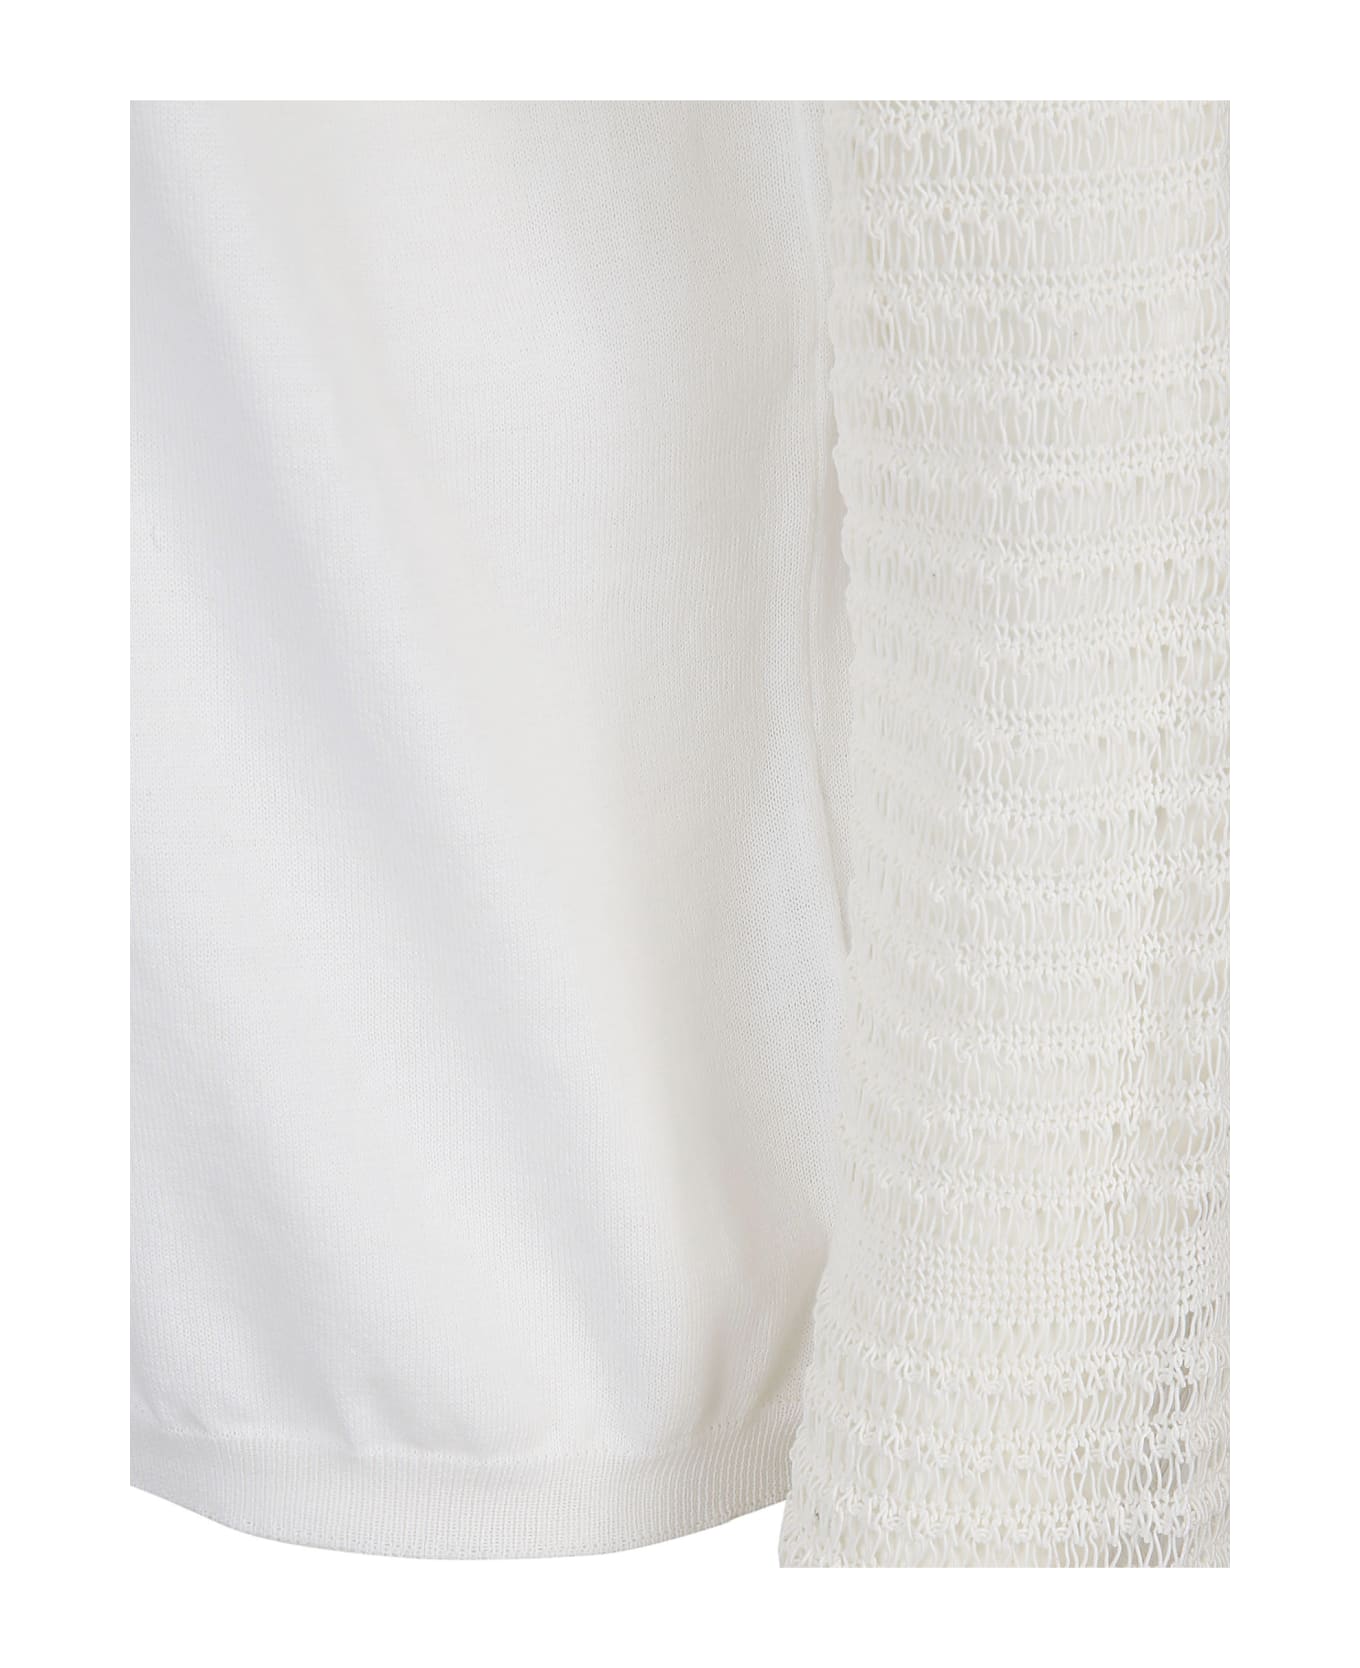 Cividini Sweaters White - White ニットウェア